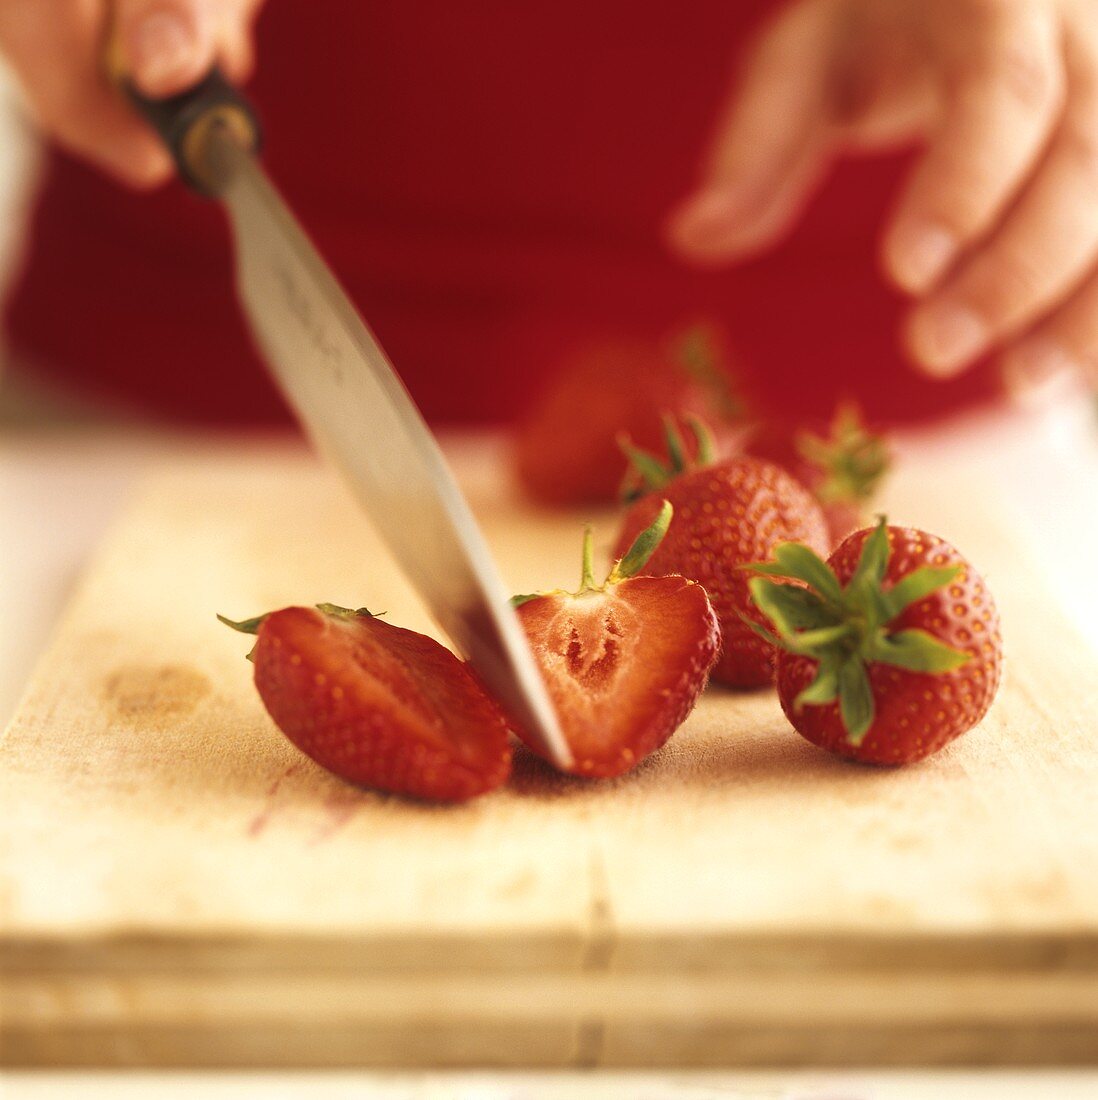 Cutting a strawberry